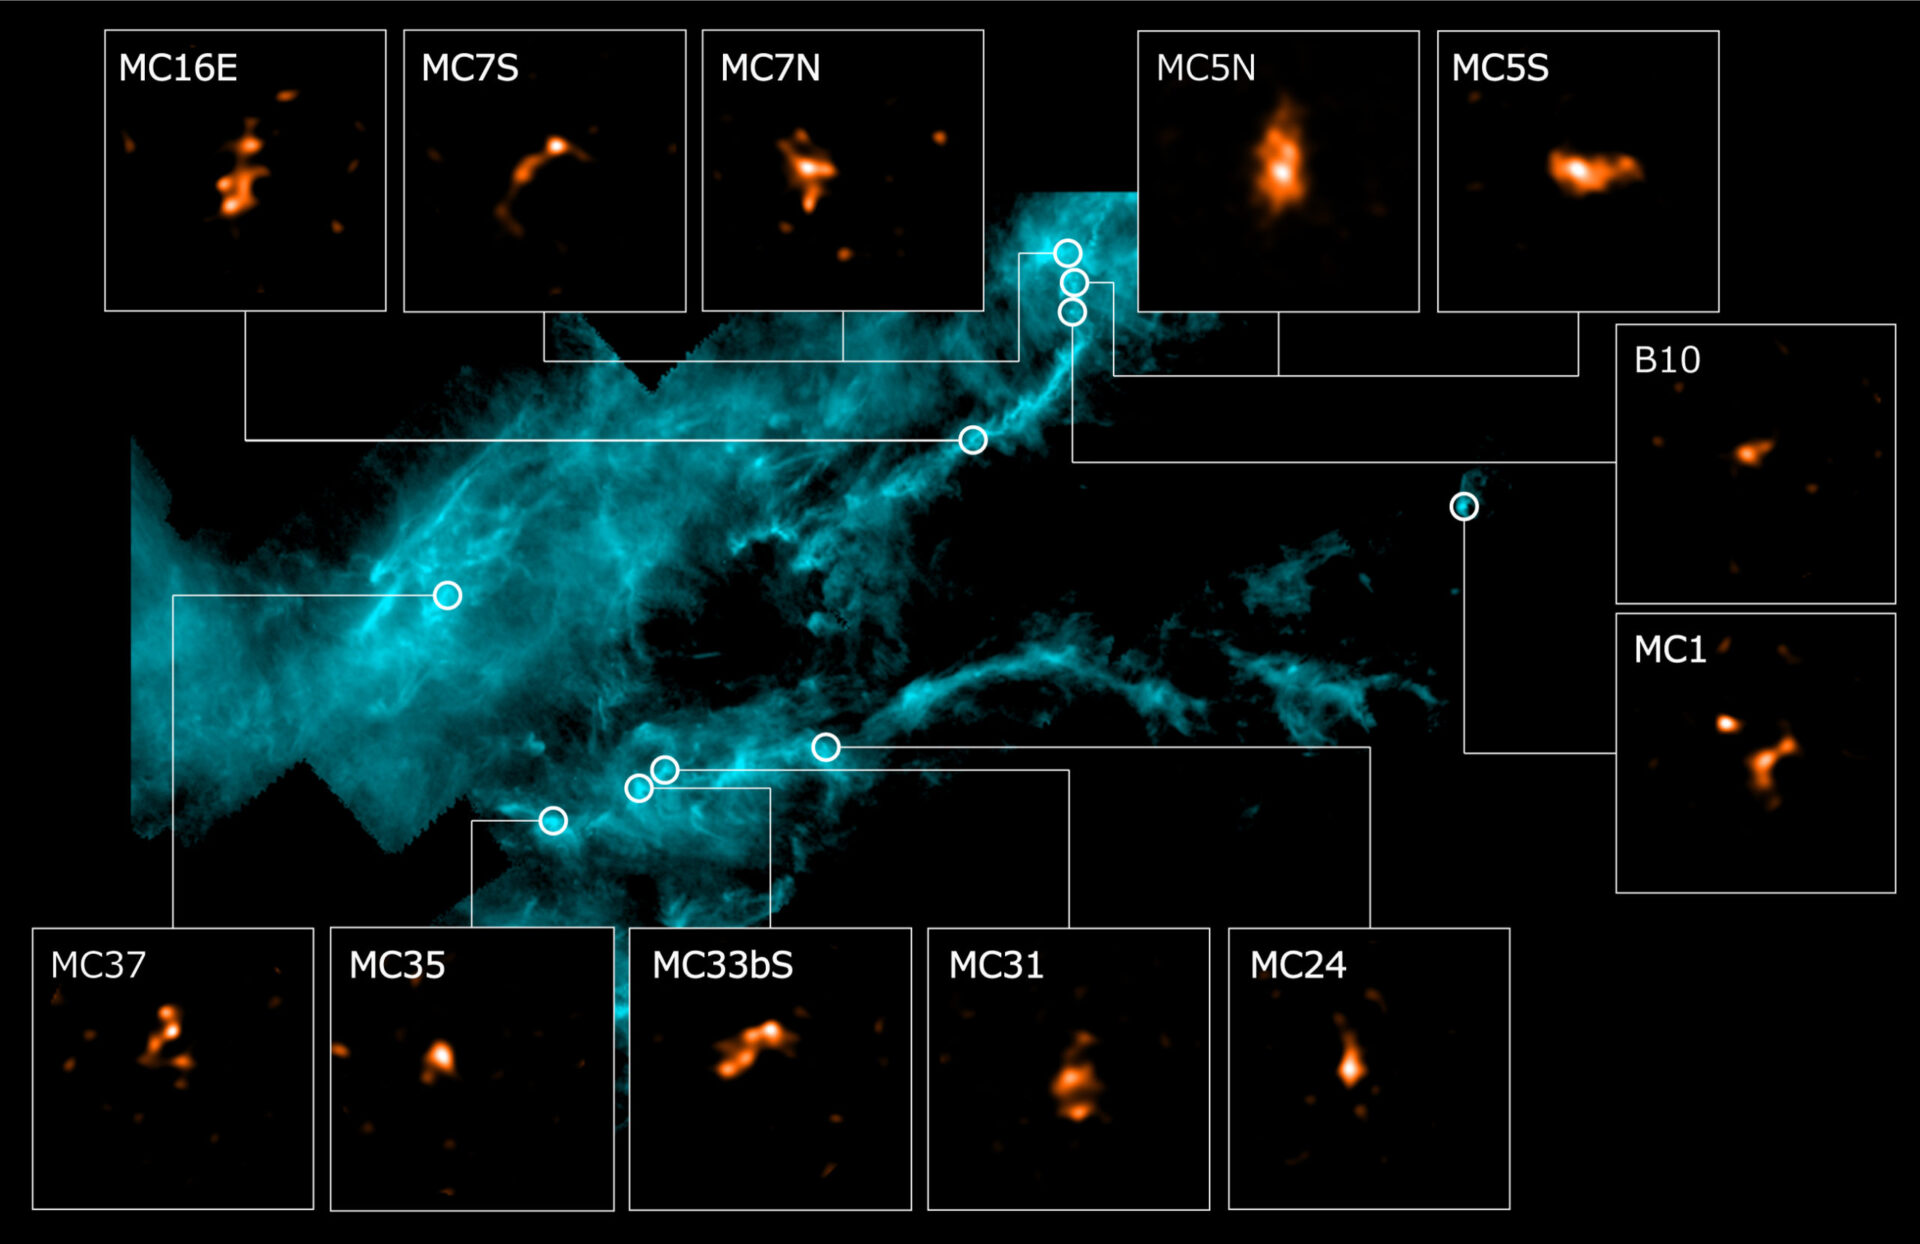 Imagen infrarroja de campo amplio de la nube molecular de Tauro obtenida por el Observatorio Espacial Herschel y embriones estelares observados con ALMA (recuadros). Créditos: ALMA (ESO/NAOJ/NRAO), Tokuda et al., ESA/Herschel